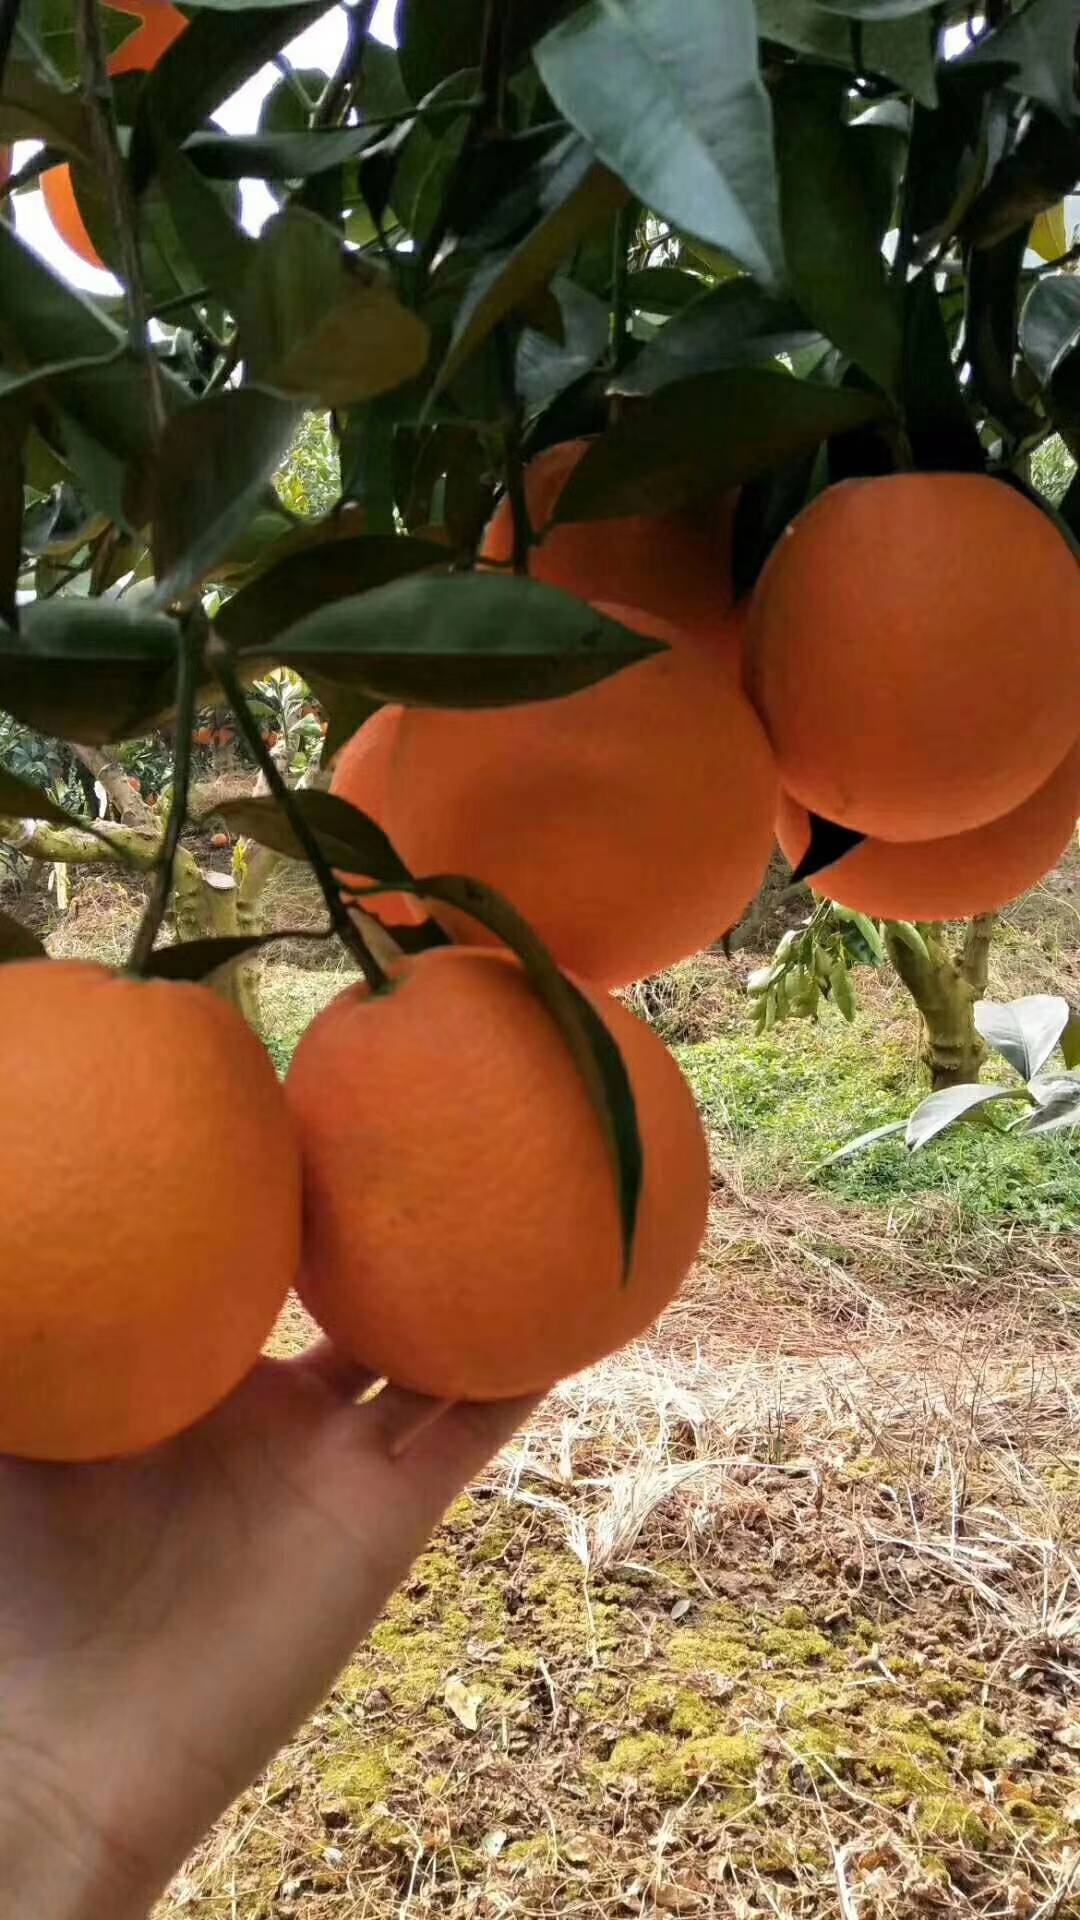 秭归脐橙、伦晚橙、红心橙、二月红、夏橙、密奈、碰柑、芦柑、产地应有尽有。